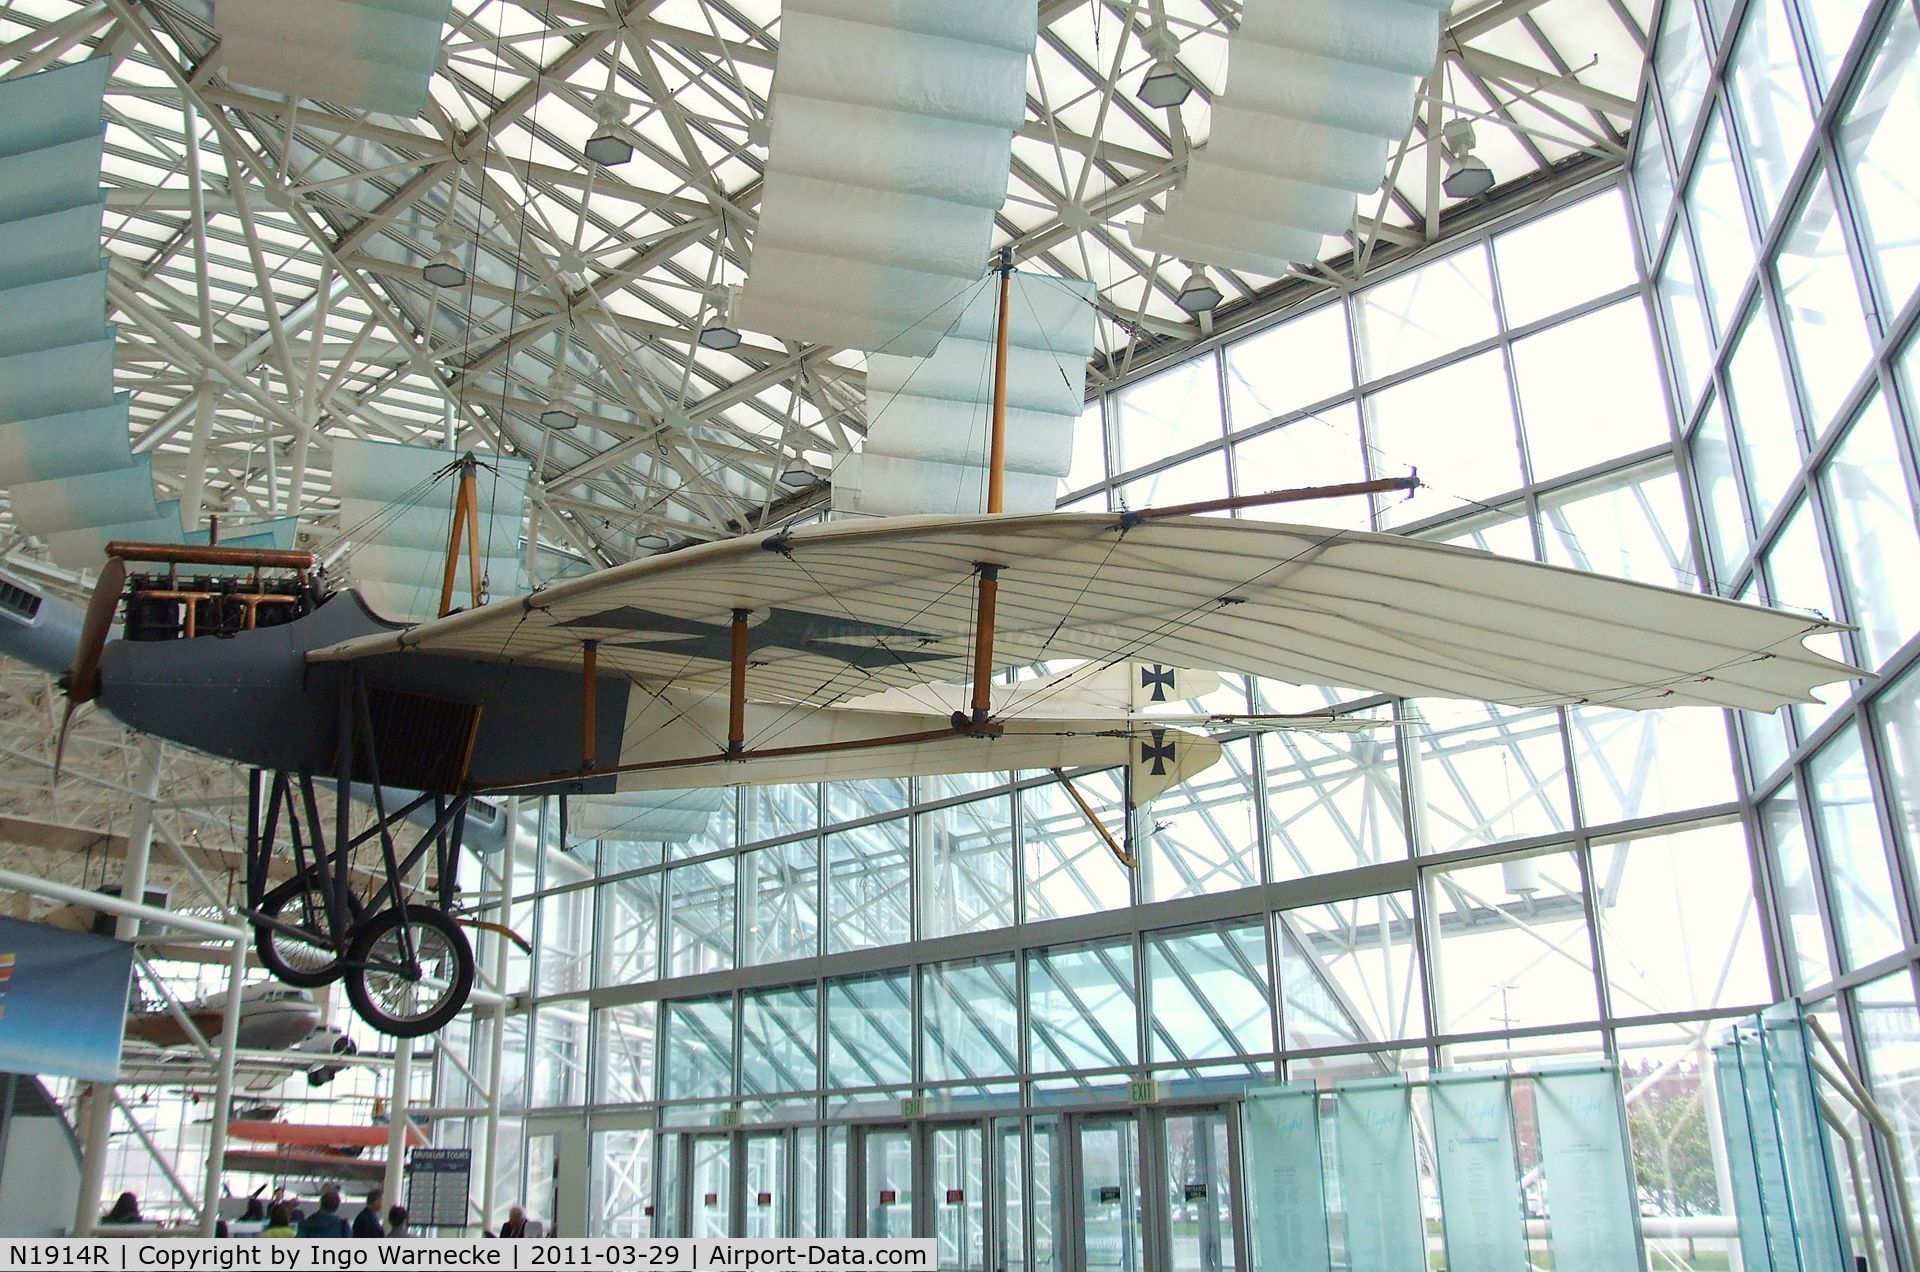 N1914R, Rumpler Taube Replica C/N 0039, Arthur A. Williams Rumpler Taube replica at the Museum of Flight, Seattle WA